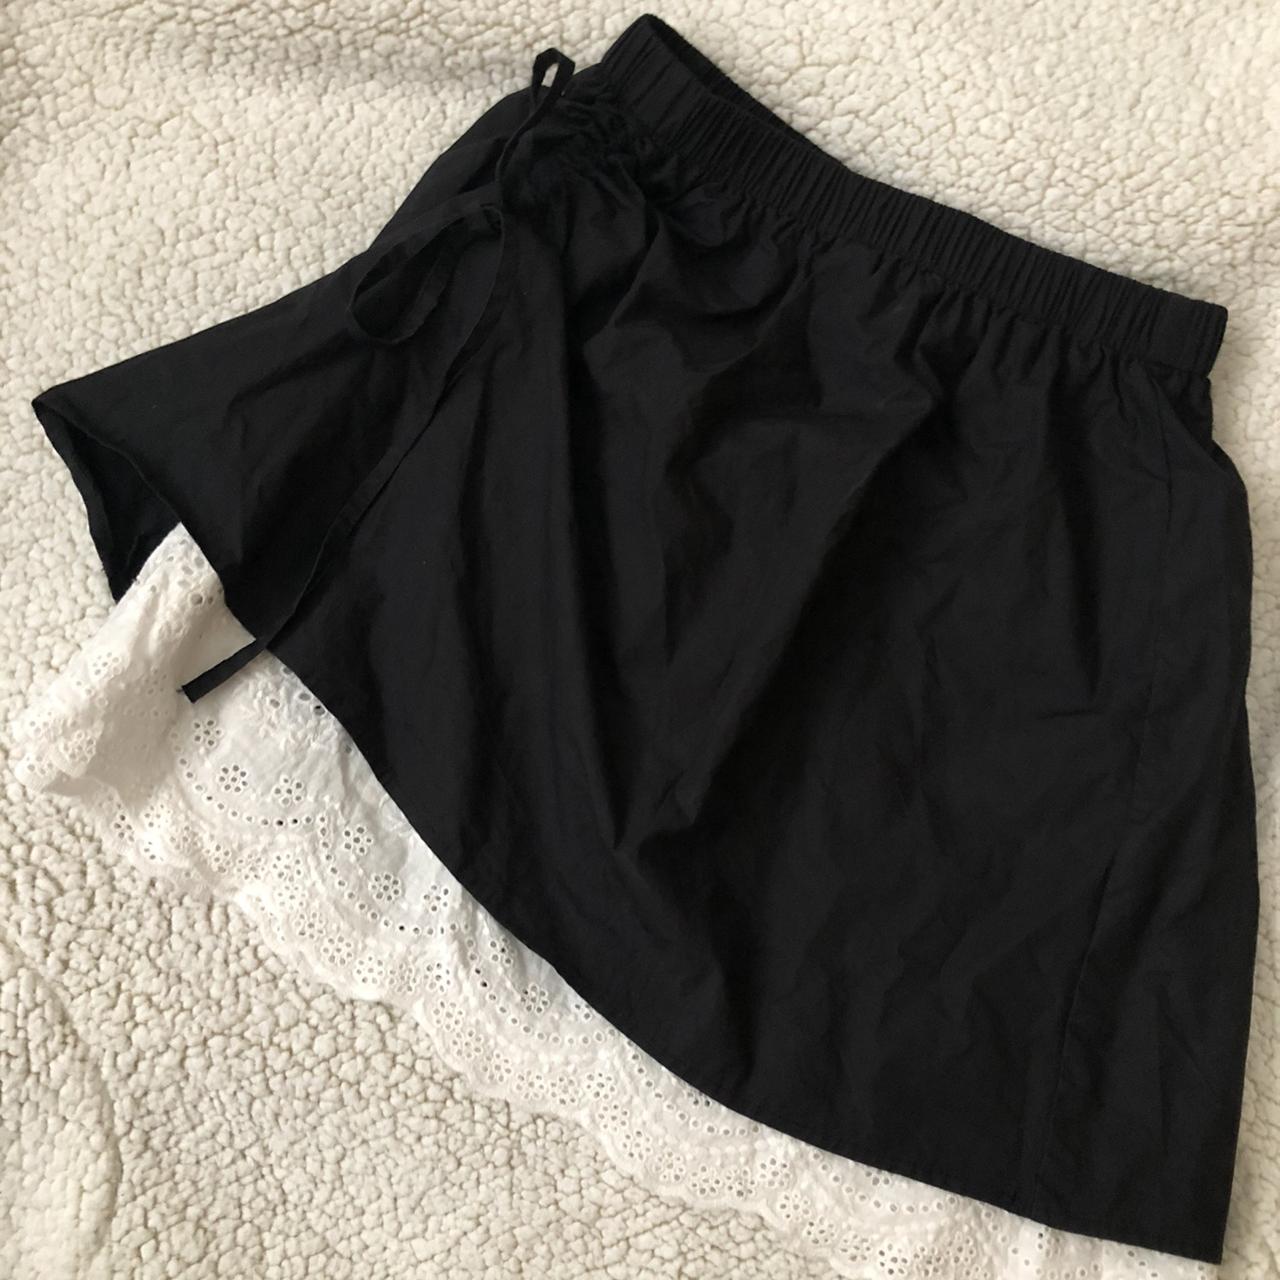 Stylenanda Women's Black and White Skirt (3)